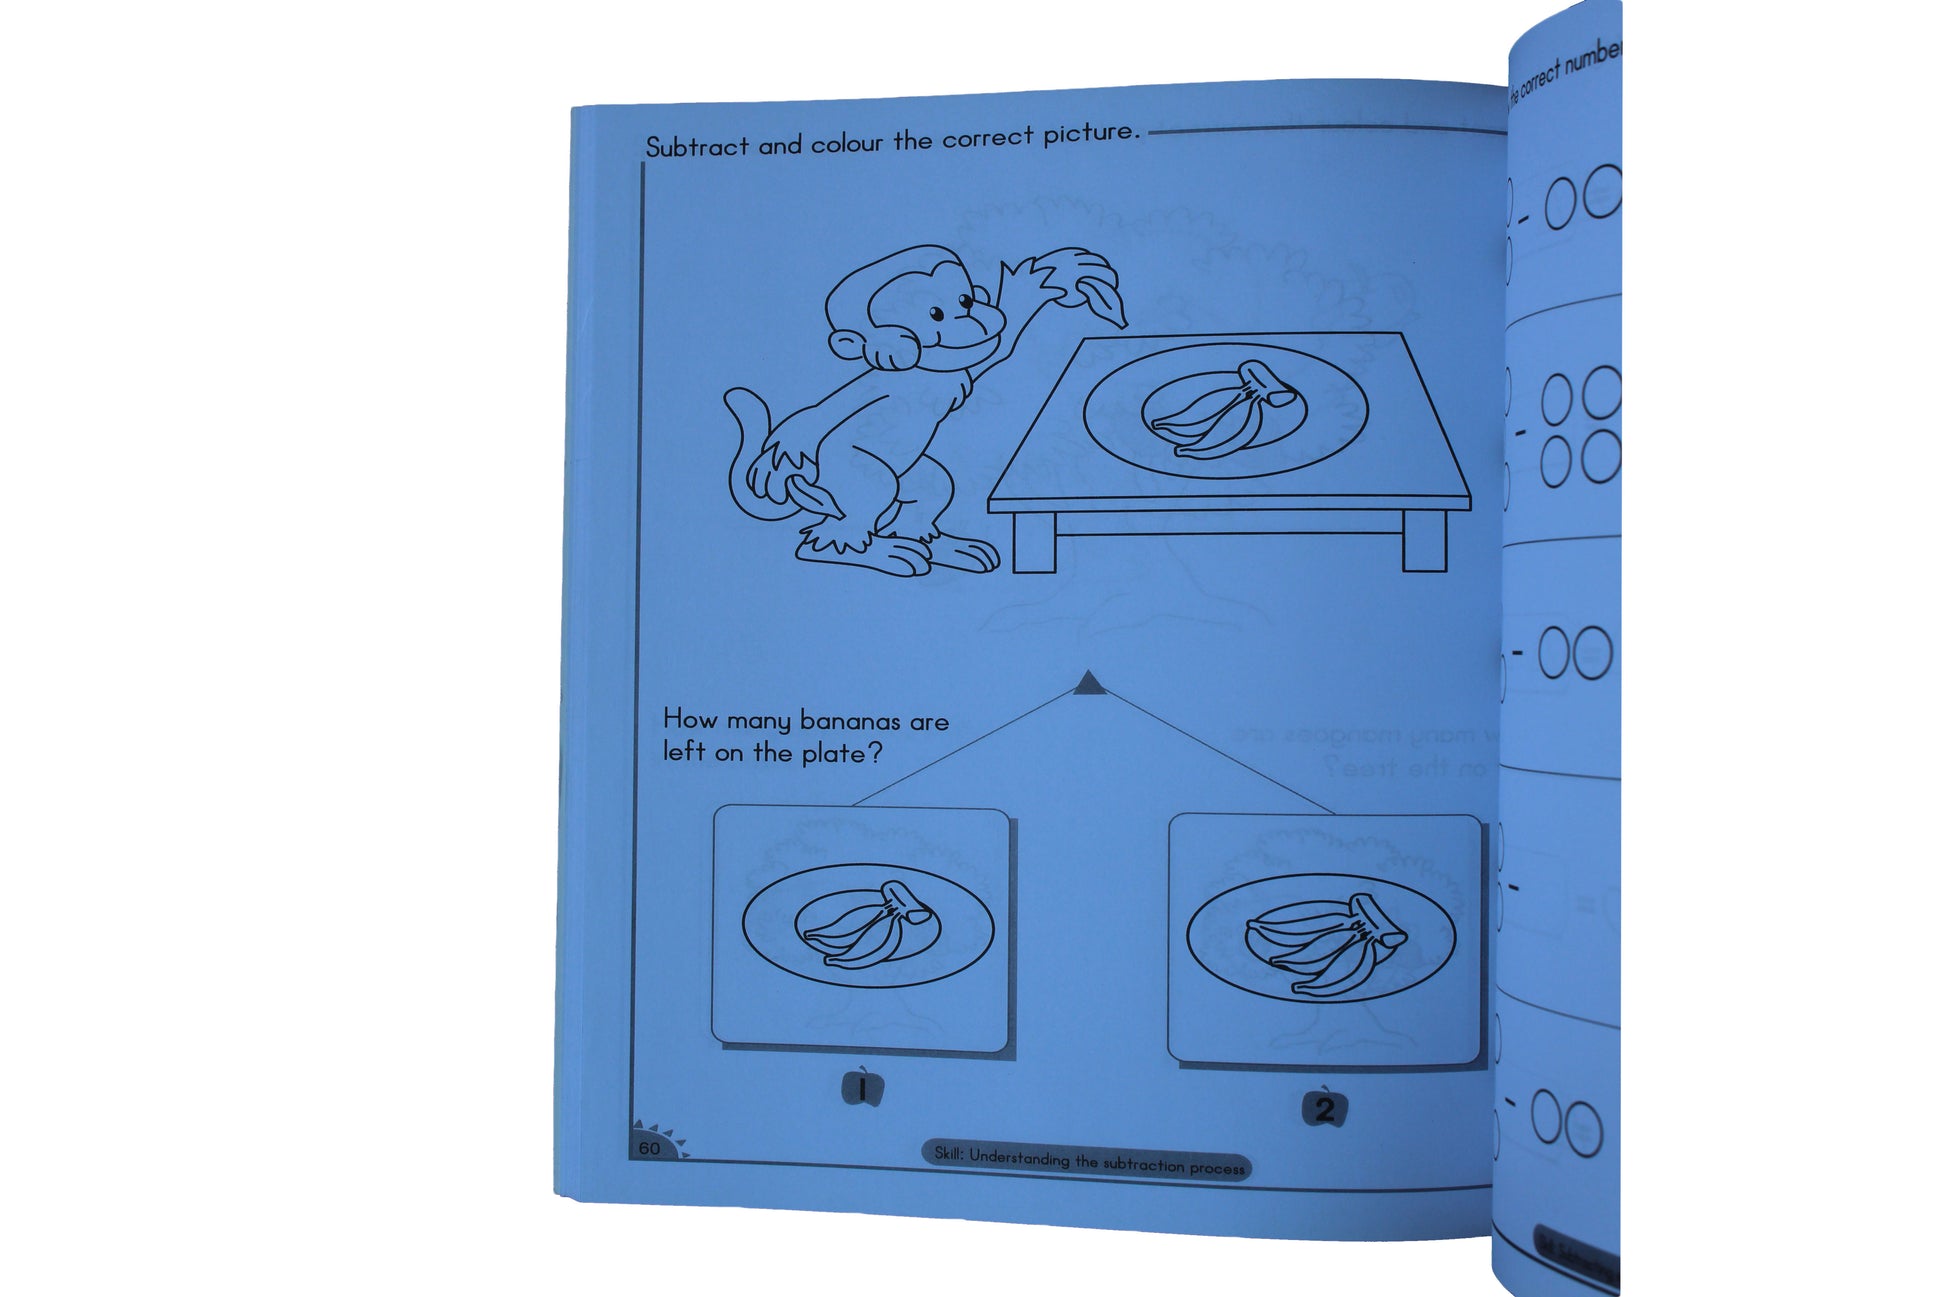 Preschool Maths Workbook 2 (Ages 4-6) - BuyAbility South Africa